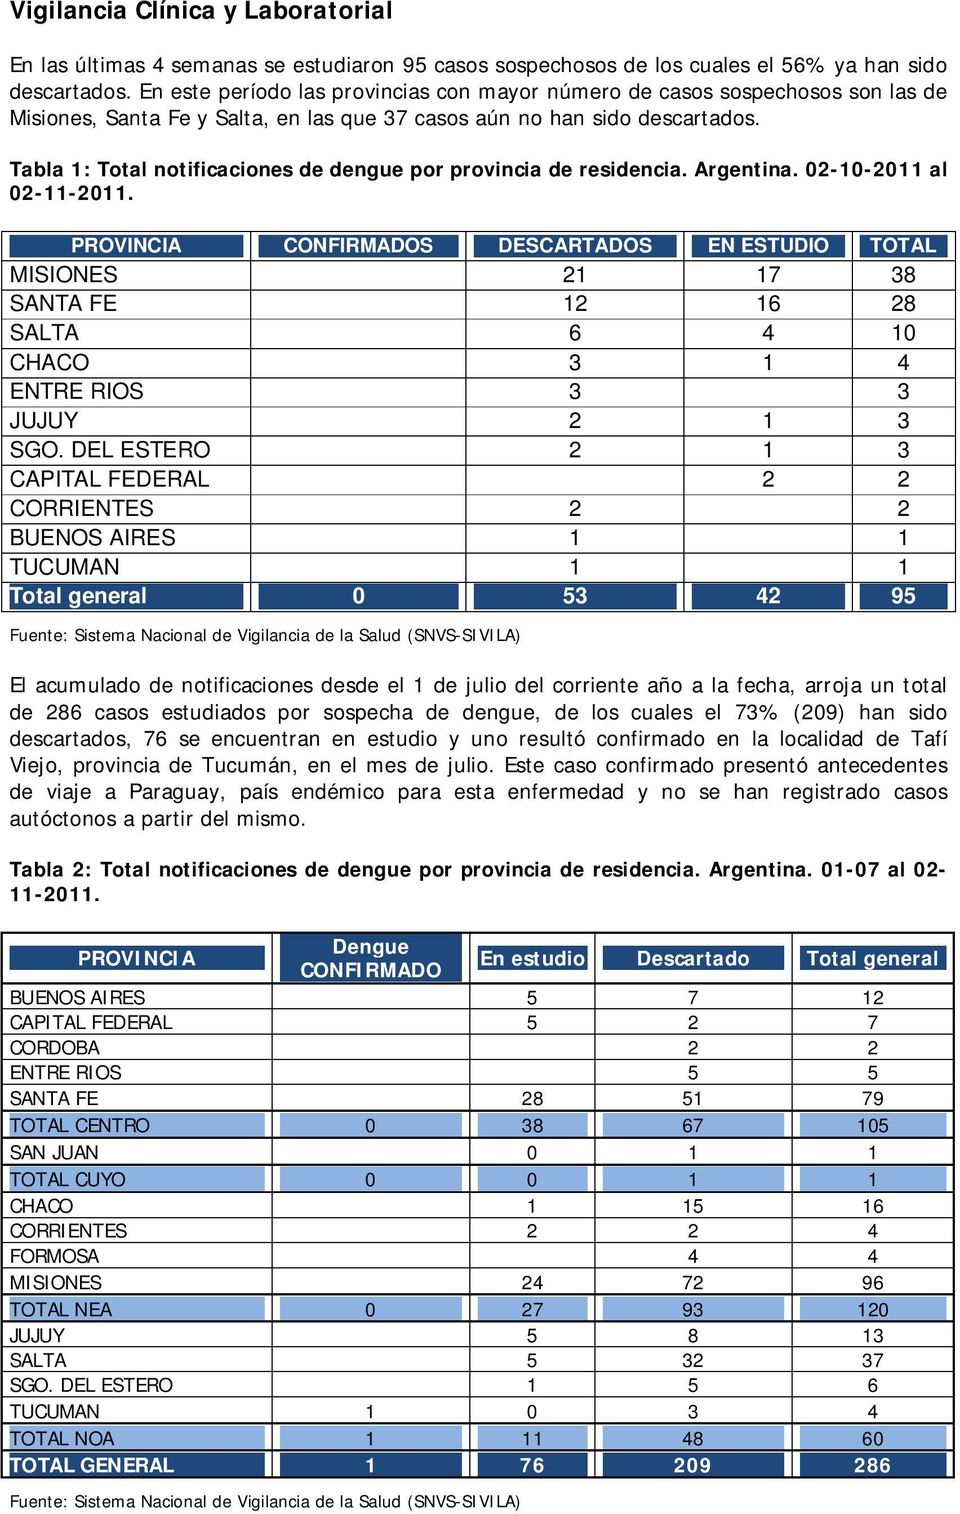 Tabla 1: Total notificaciones de dengue por provincia de residencia. Argentina. 02-10-2011 al 02-11-2011.